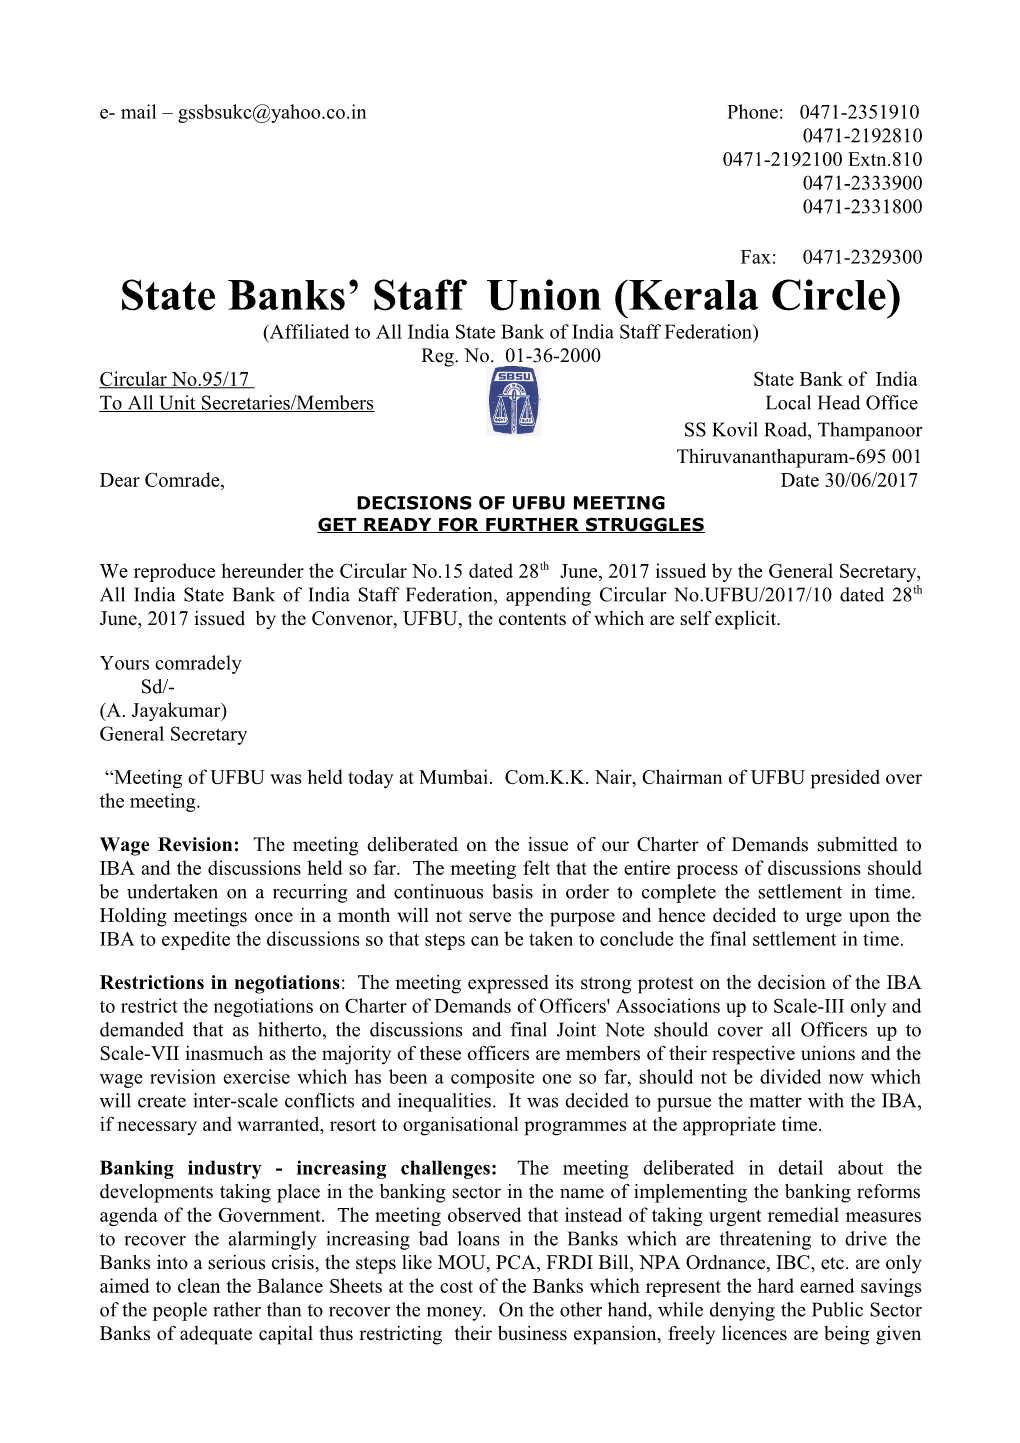 State Banks Staff Union (Kerala Circle)